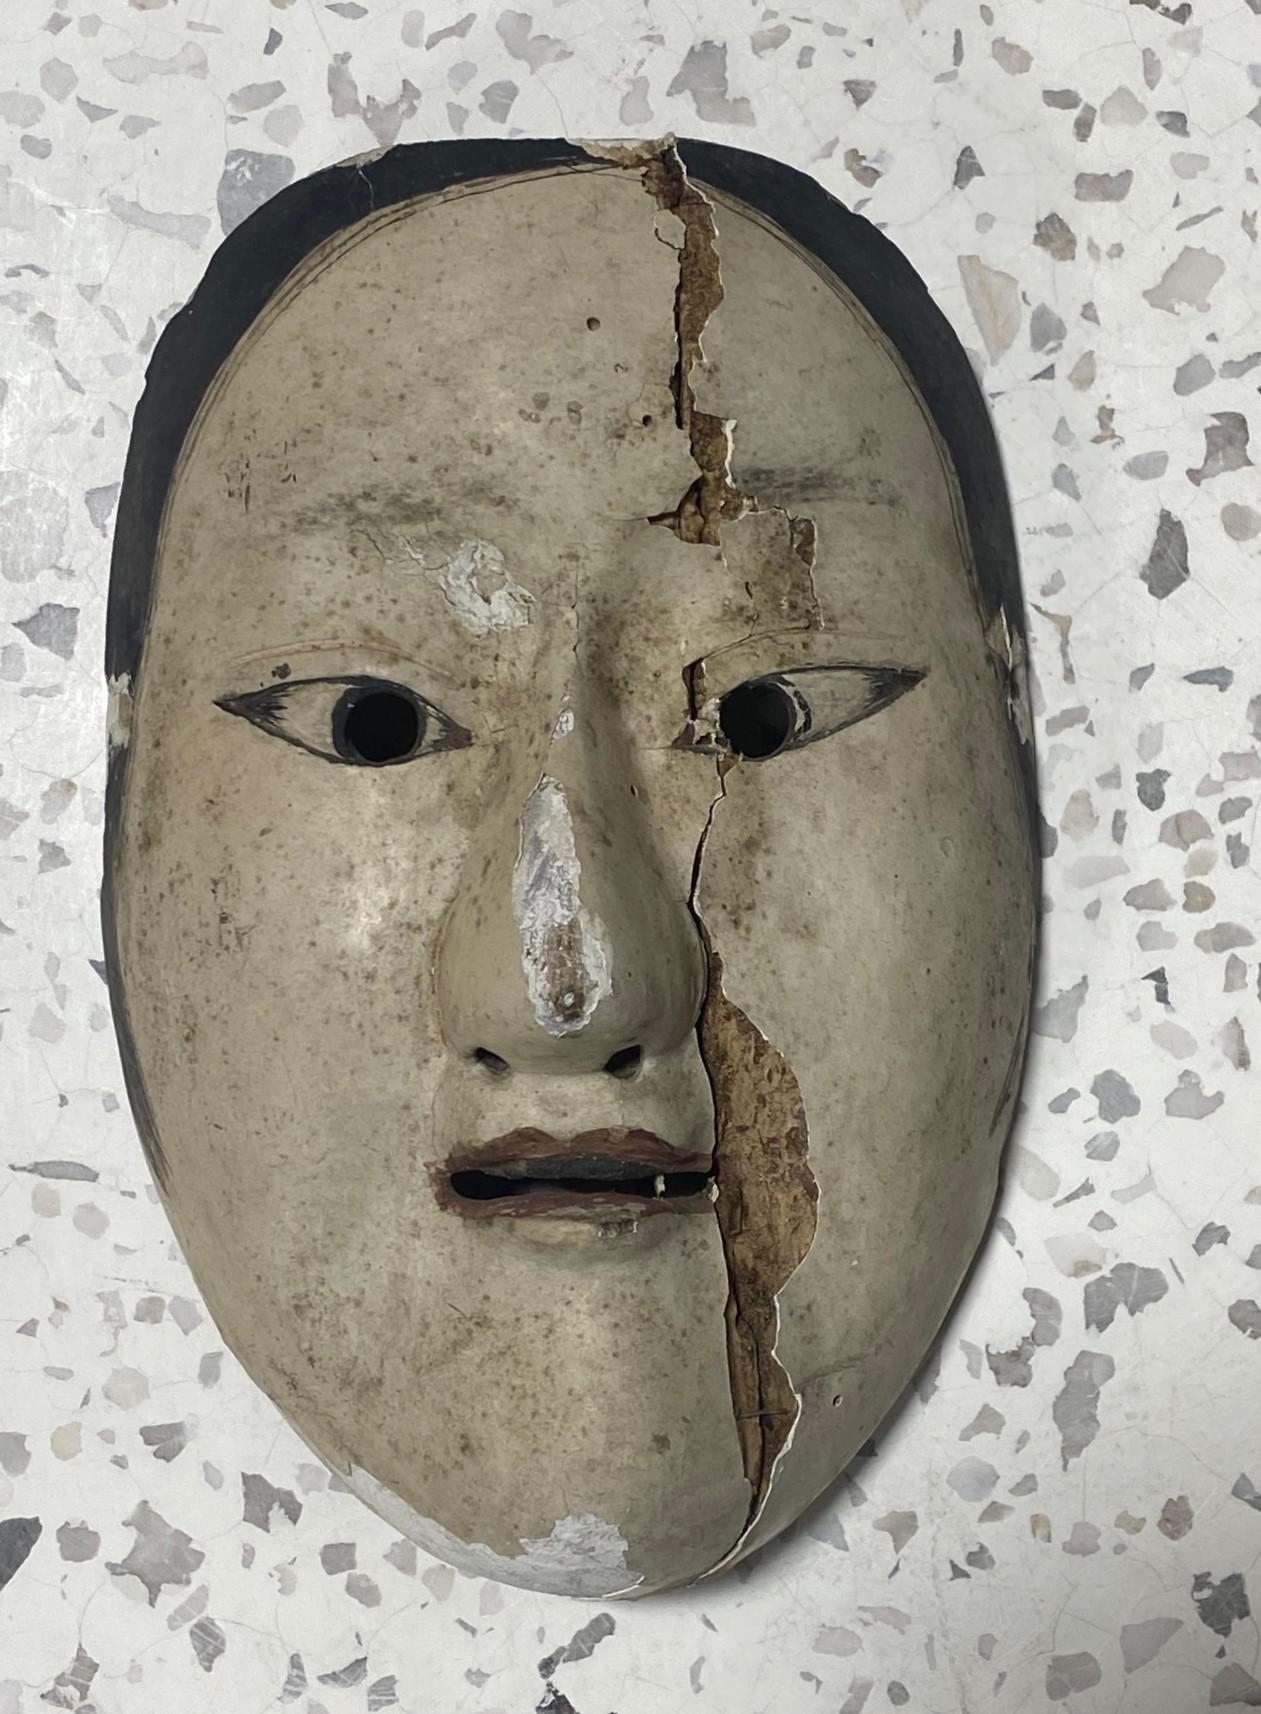 Eine wirklich schöne, wunderbar gealterte, verführerische Maske, die für das japanische Noh-Theater hergestellt wurde. Die natürlich verblichene Schönheit und der einzigartige Charakter haben uns sofort in den Bann dieser Maske gezogen. 

Die Maske